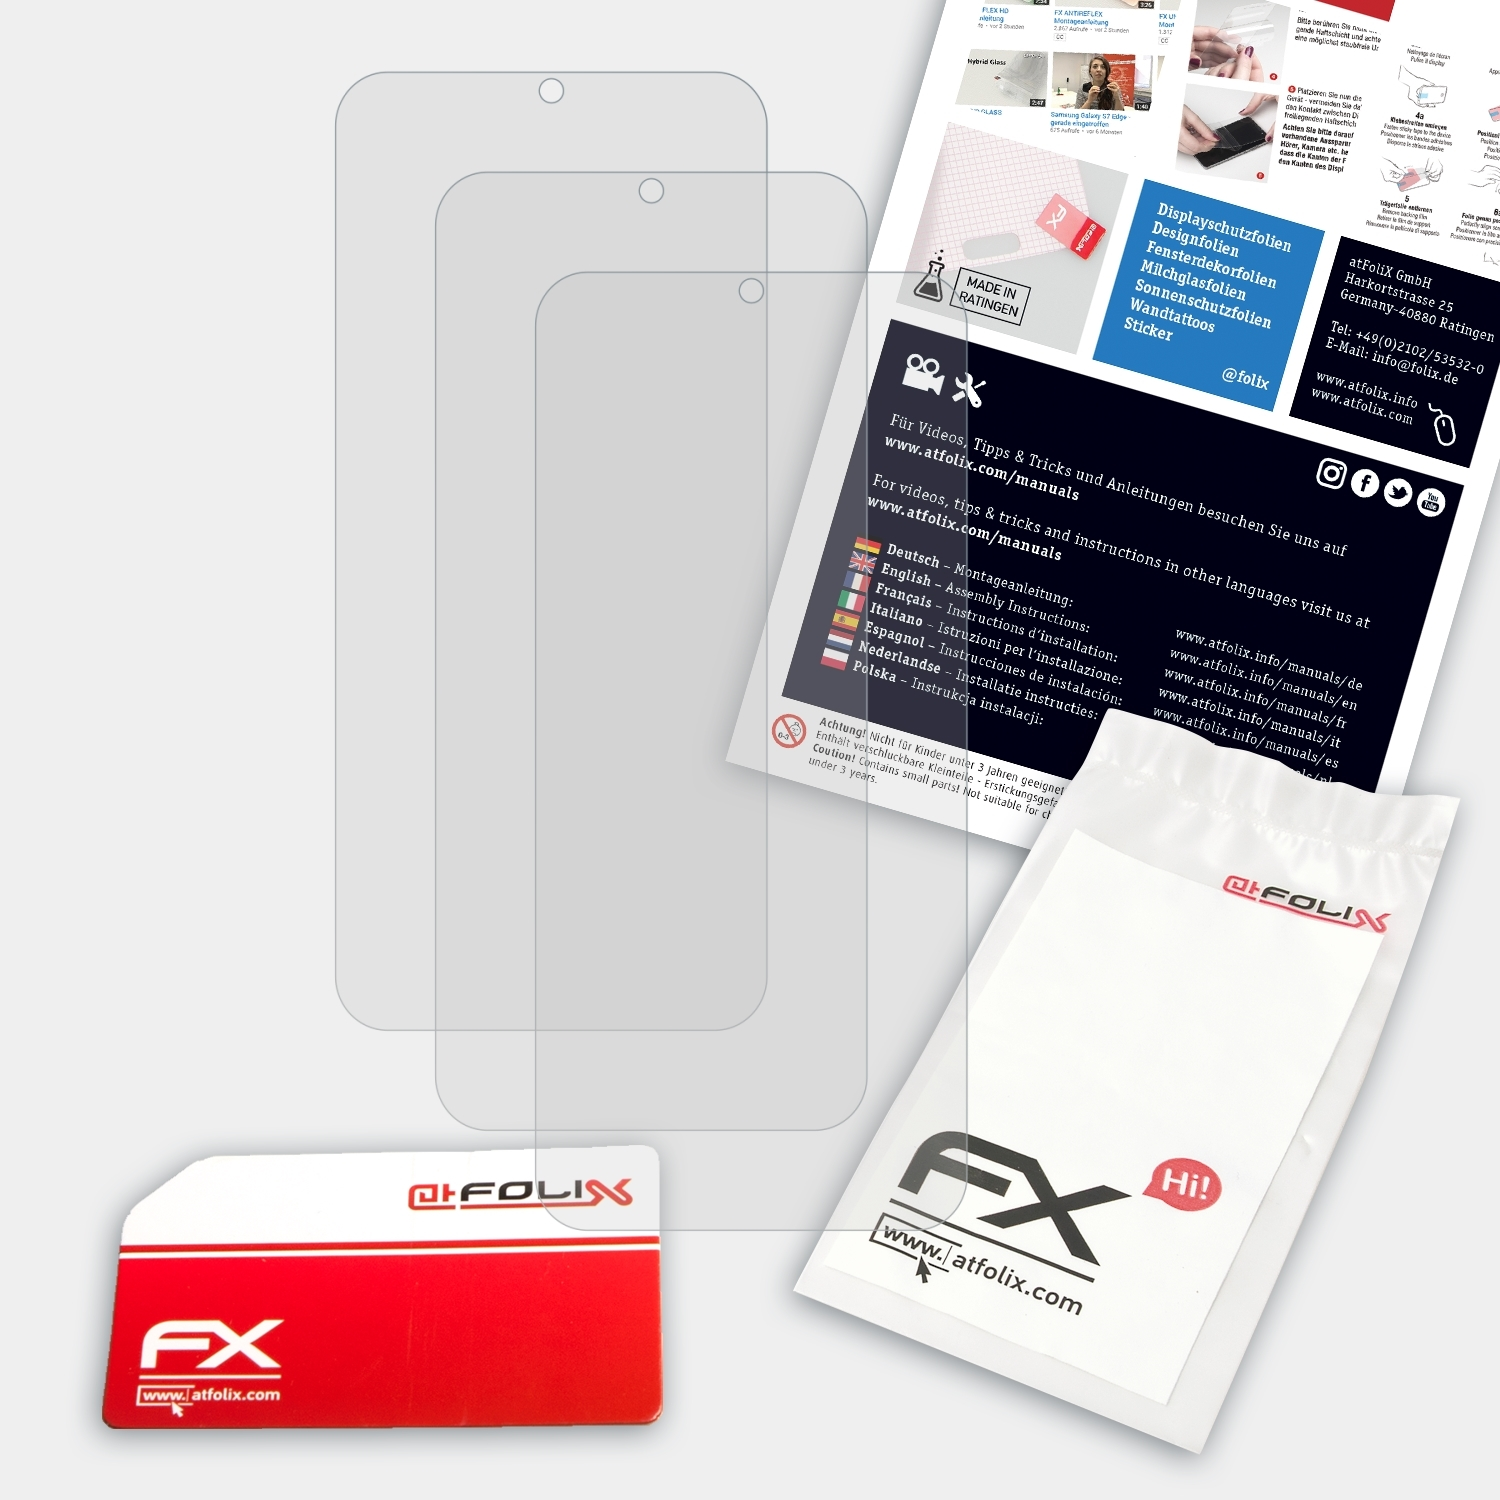 FX-Antireflex Displayschutz(für C16 3x ATFOLIX Oukitel Pro)